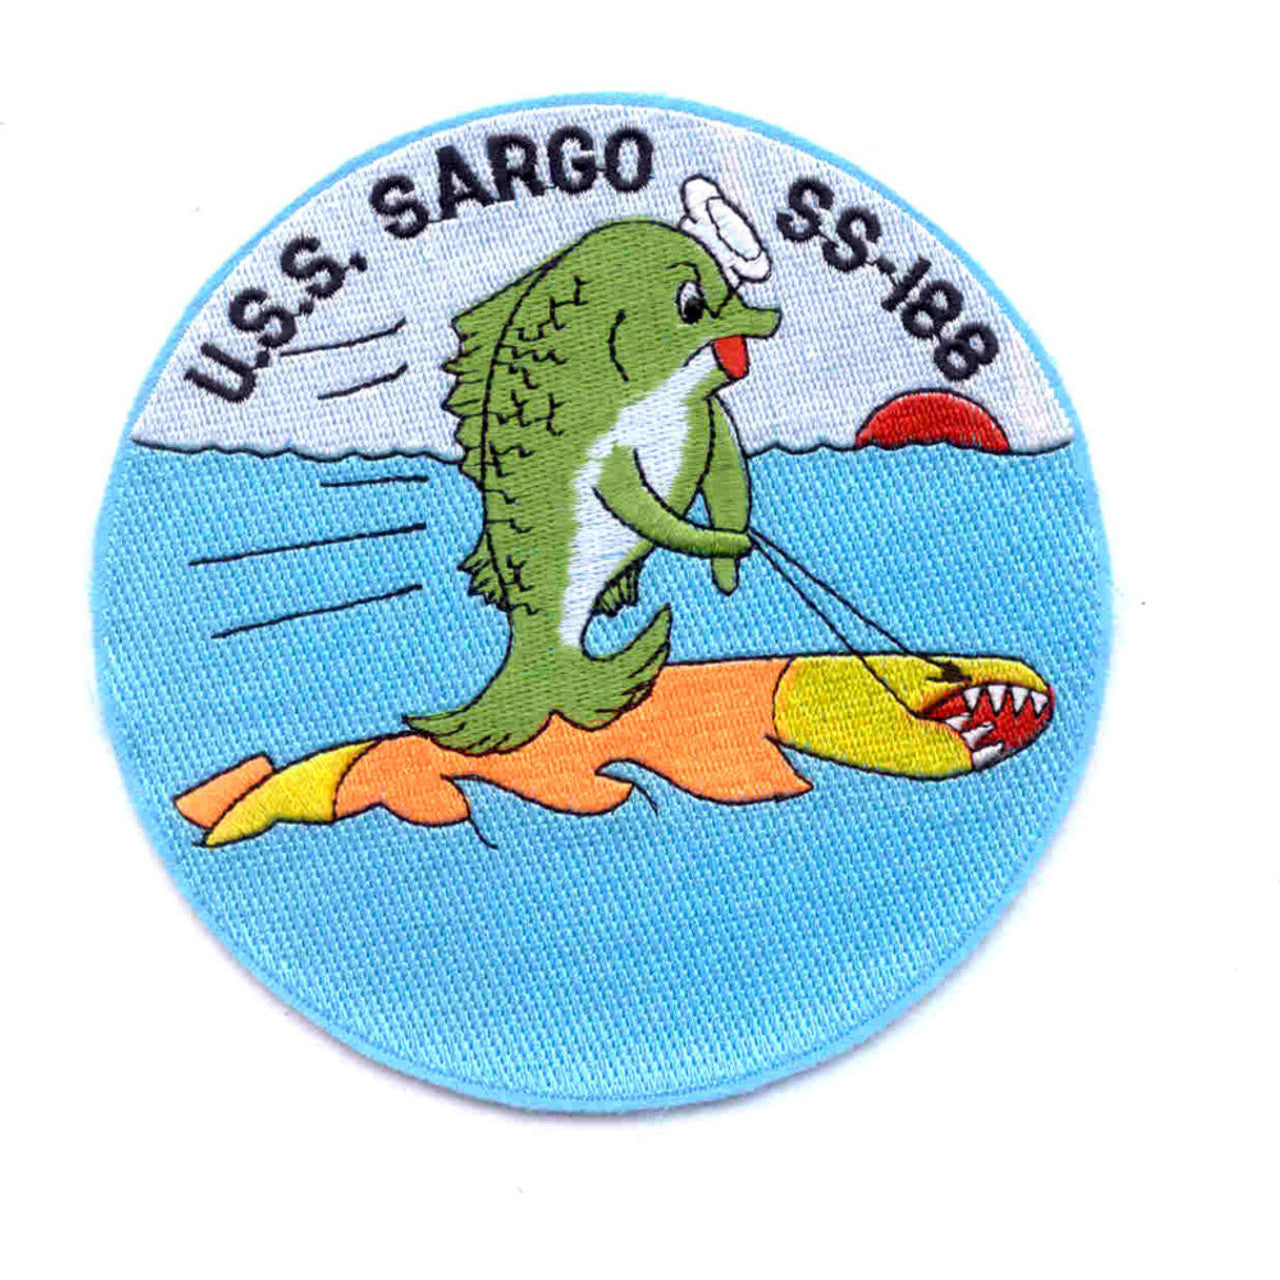 USS SARGO SS 188 PATCH